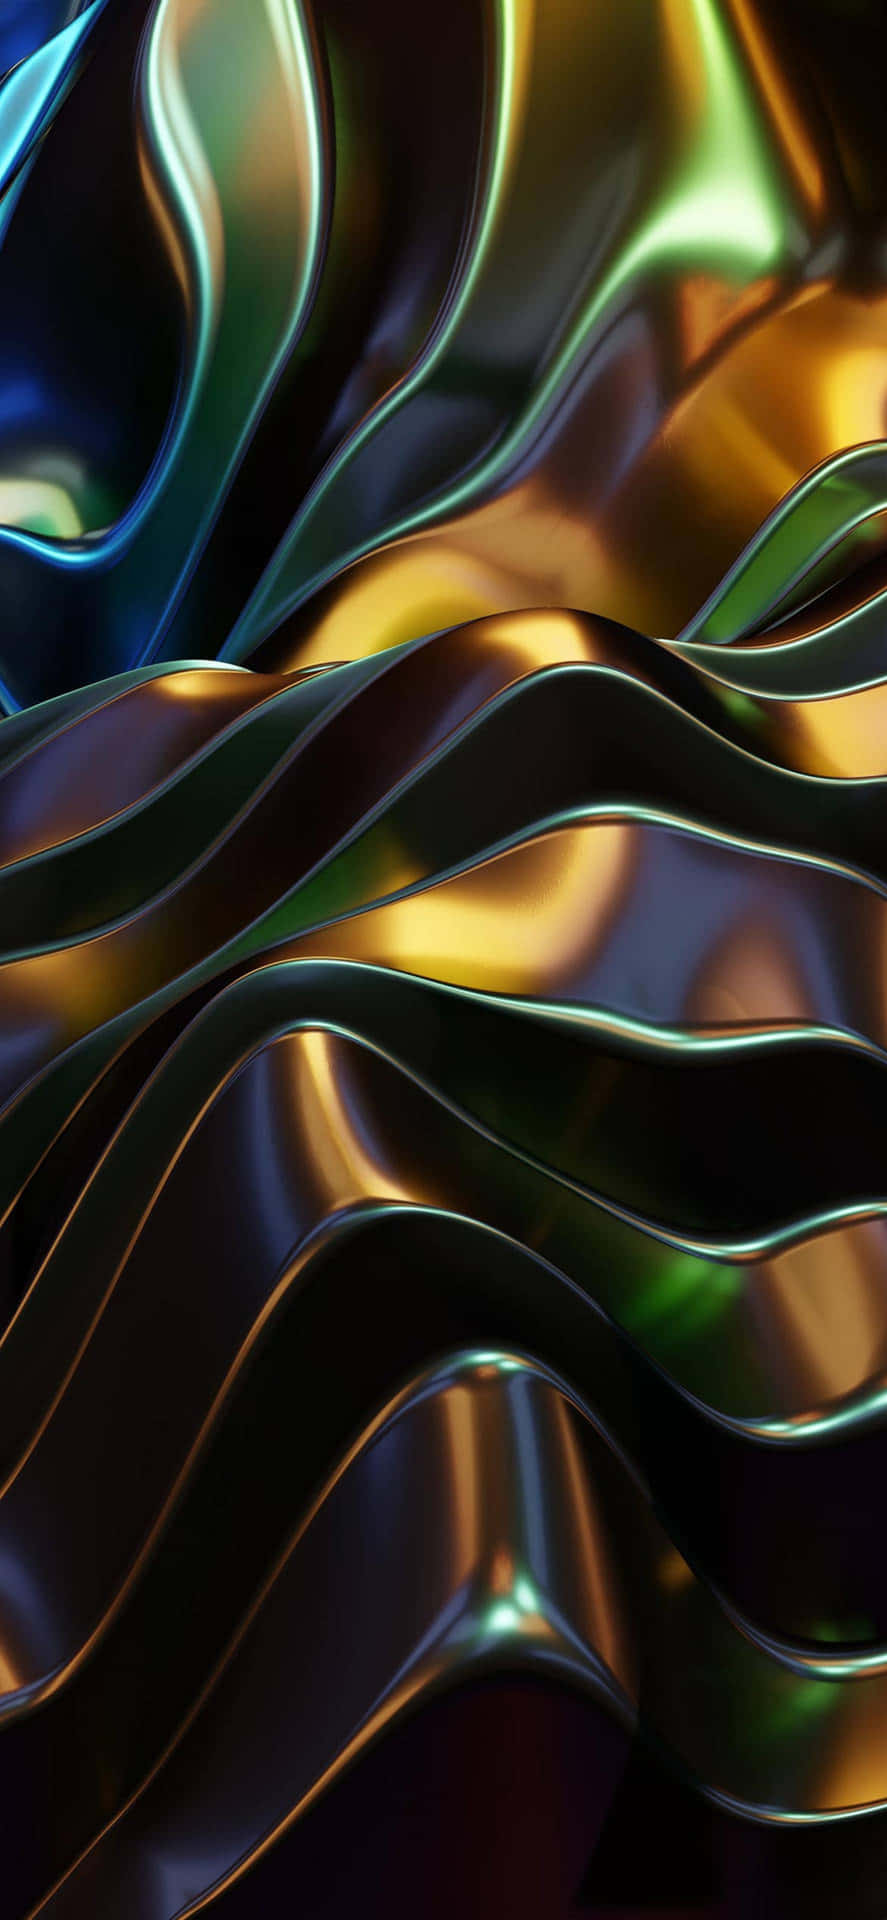 Einbuntes Abstraktes Hintergrundbild Mit Glänzendem Metall